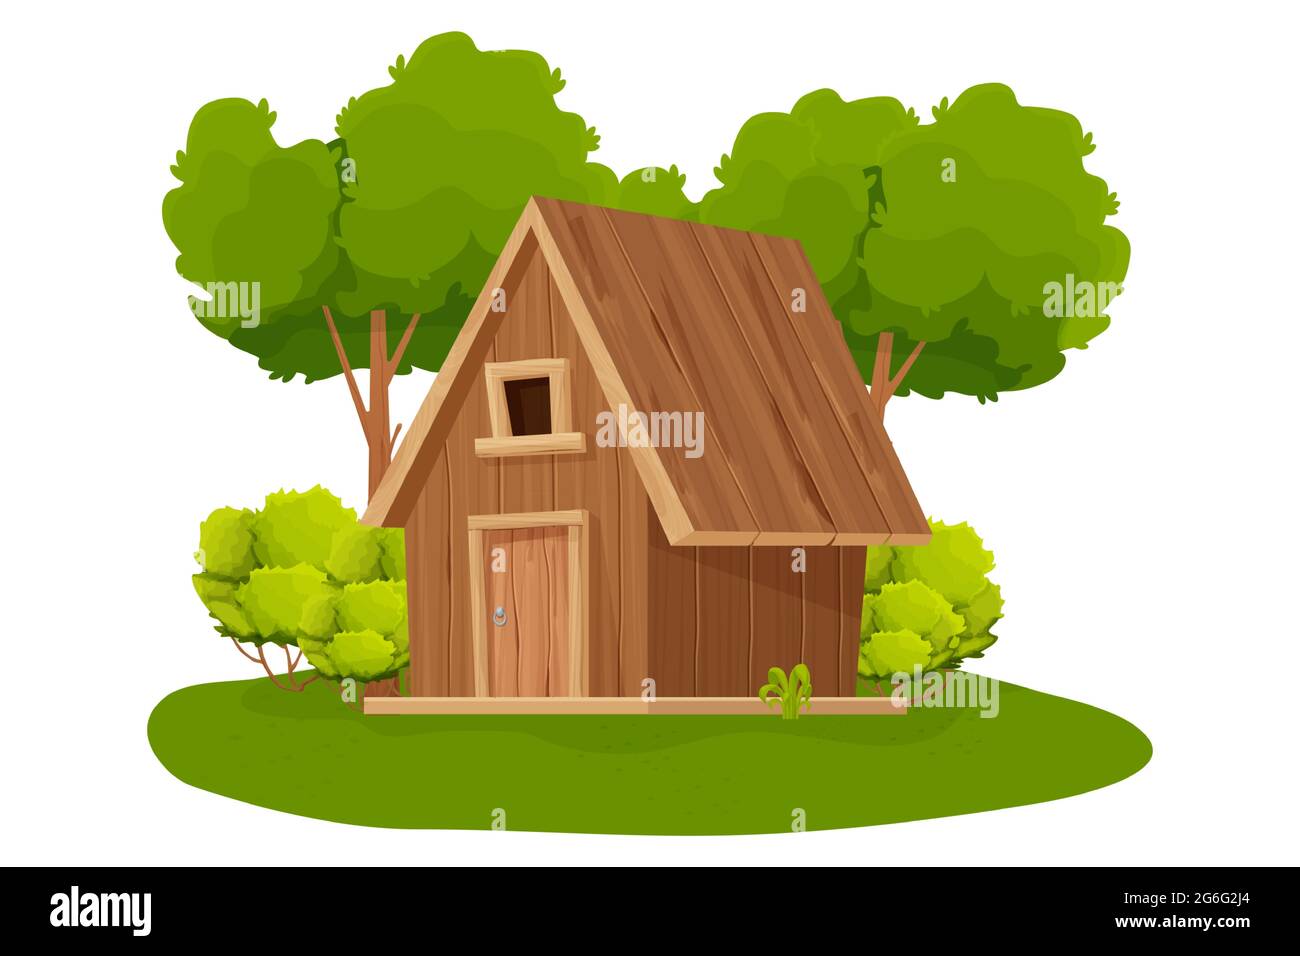 Cabaña forestal, casa de madera o cabaña decorada con árboles, hierba y  arbustos en estilo de dibujos animados aislados sobre fondo blanco. Cabaña,  edificio de campo con techo, ventana y puerta. .